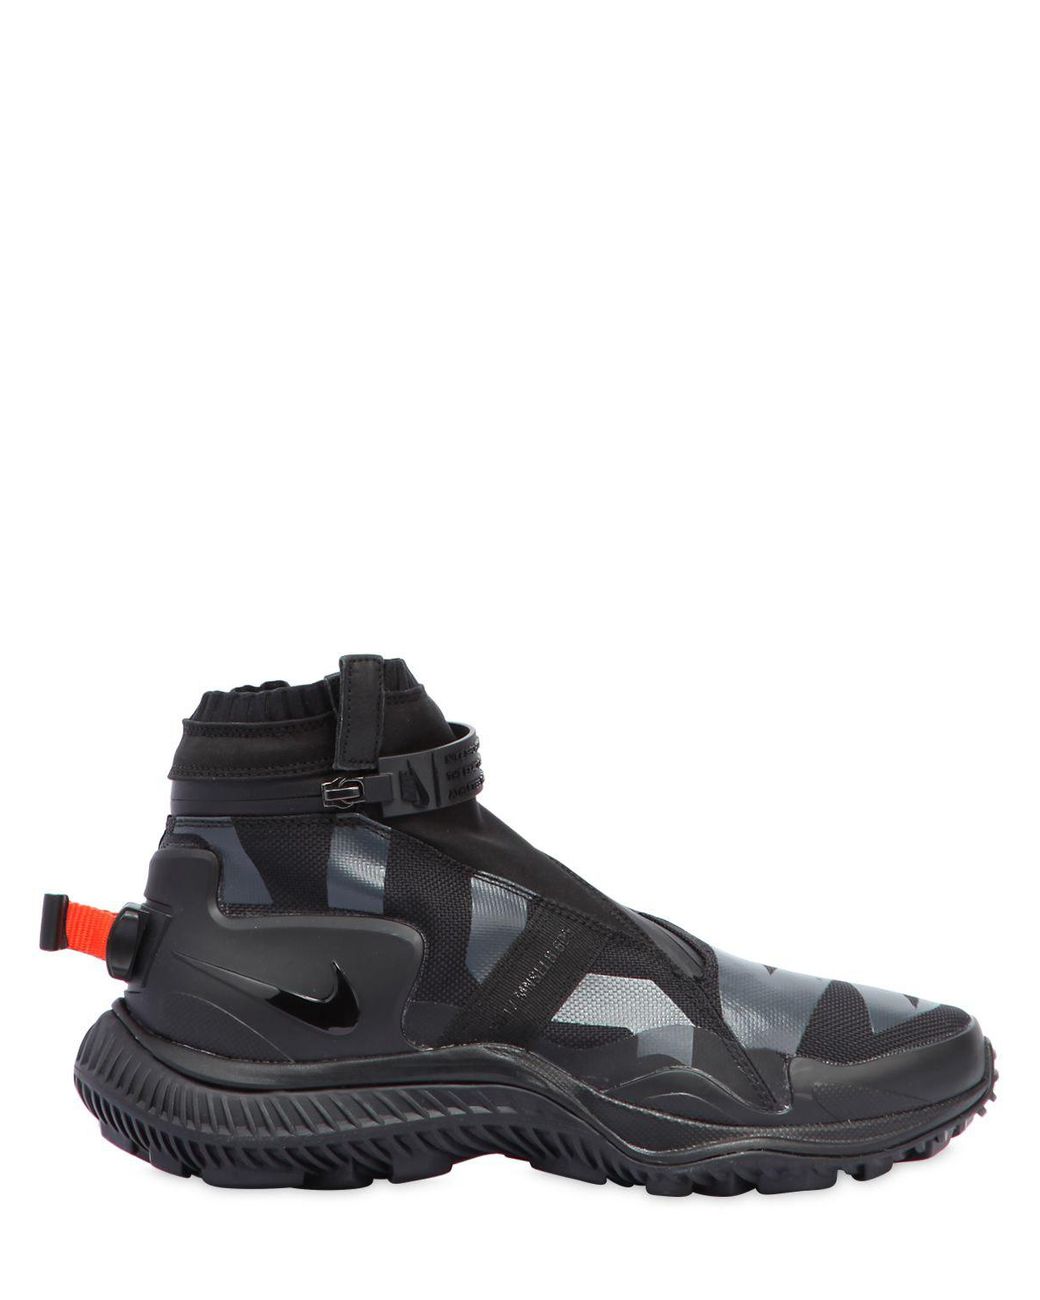 Nike Acg.008.zpbt Waterproof Sneaker Boots in Black for Men | Lyst